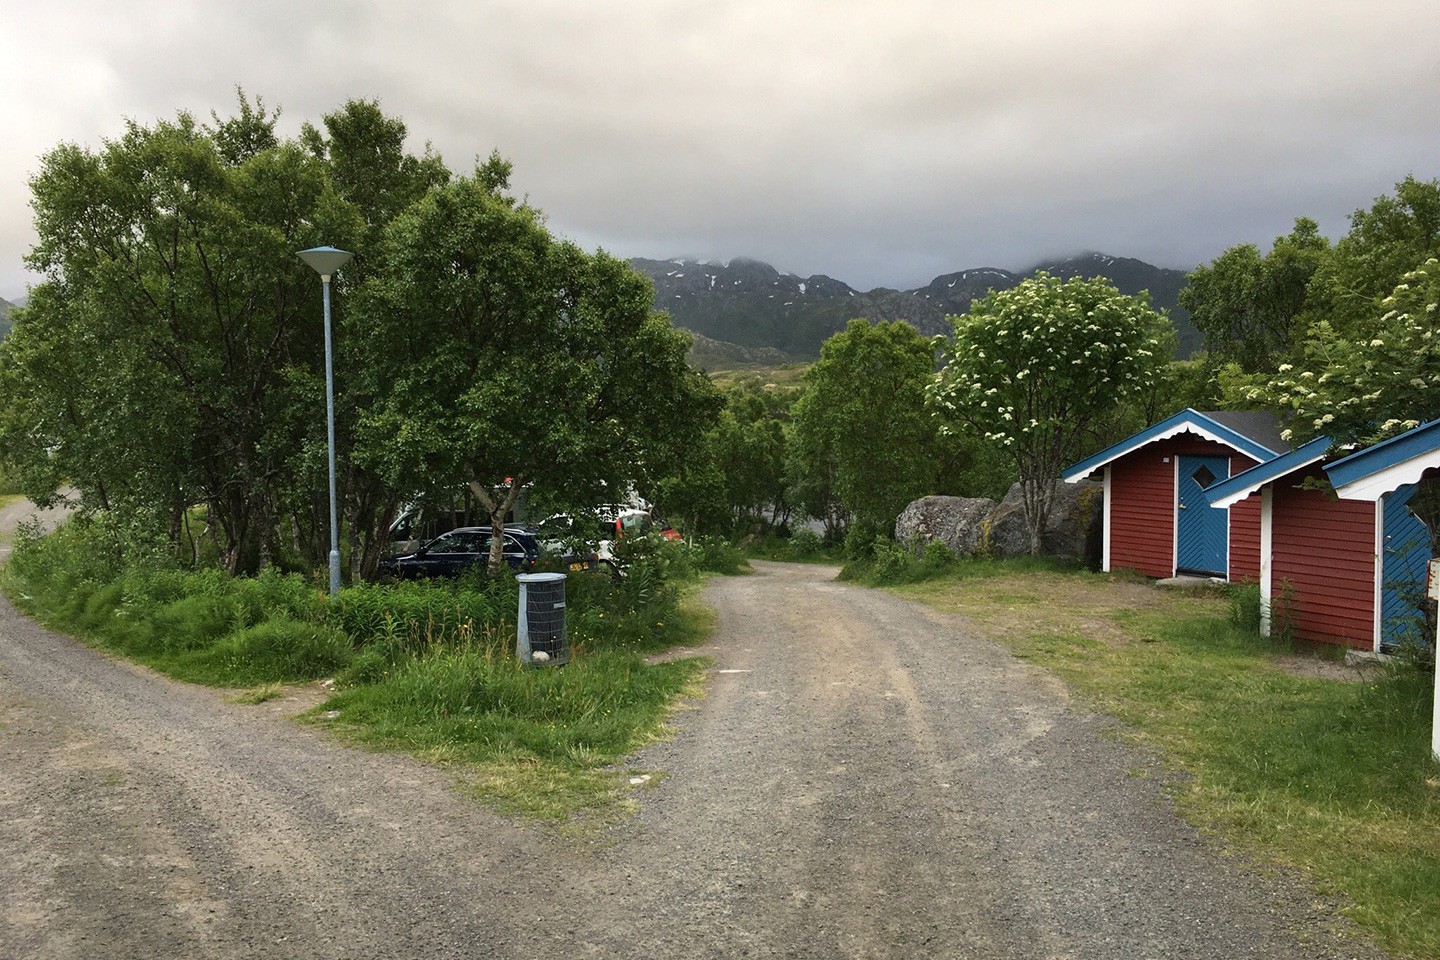 Hytter rondreis Heilagr: Finland en Noorwegen